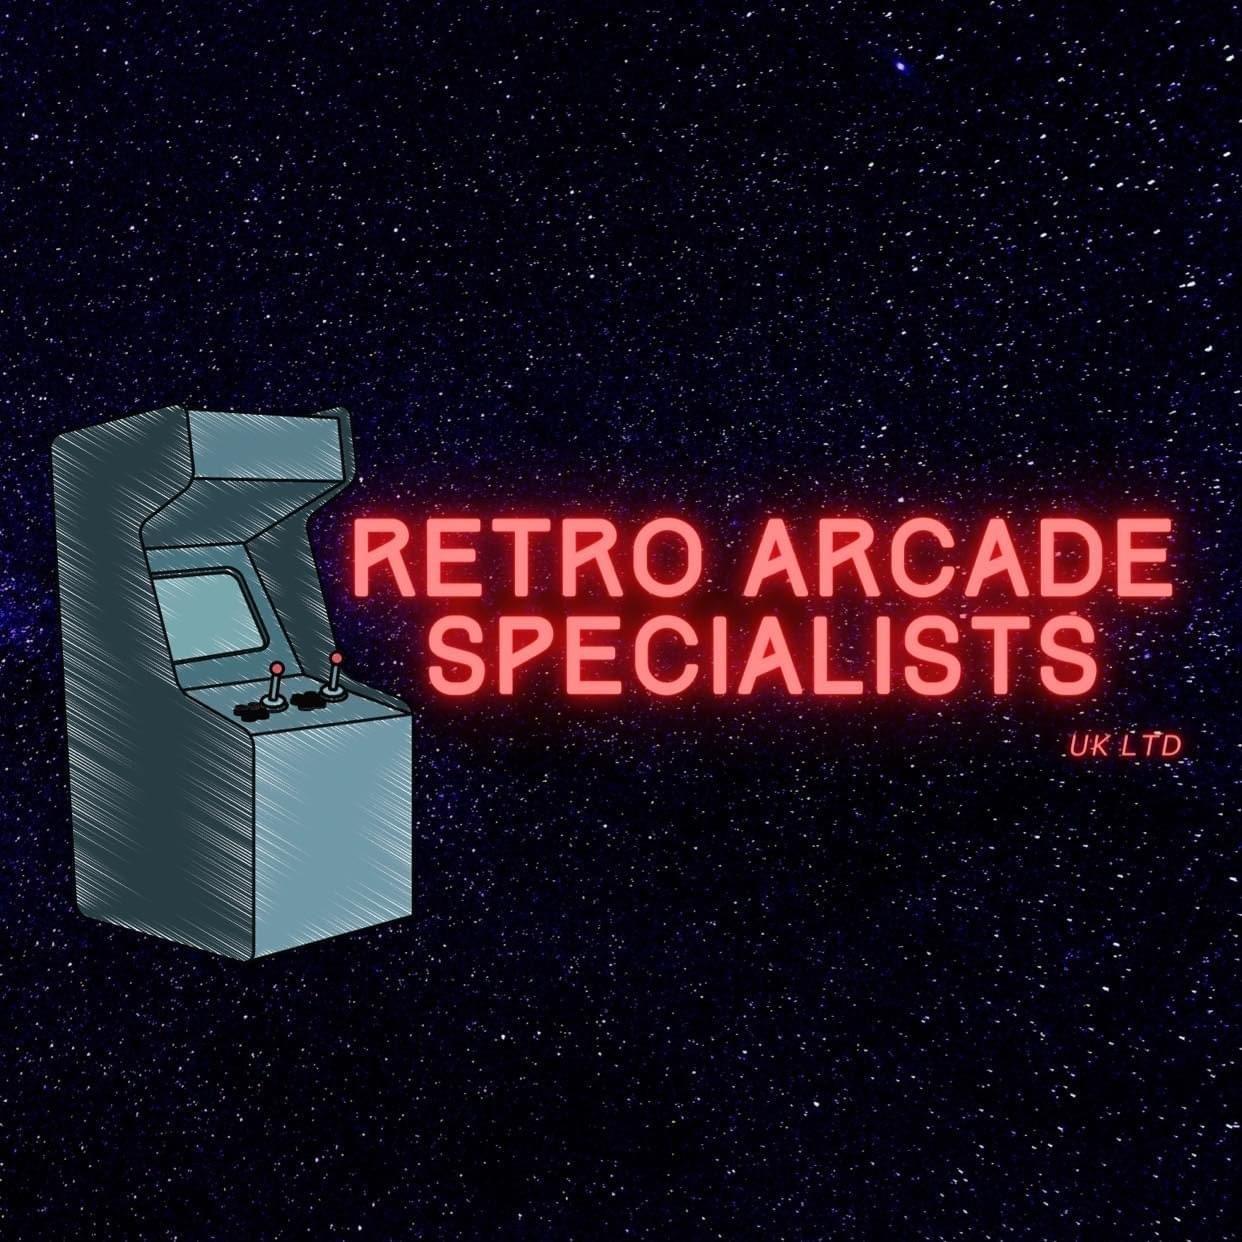 Retro arcade specialists